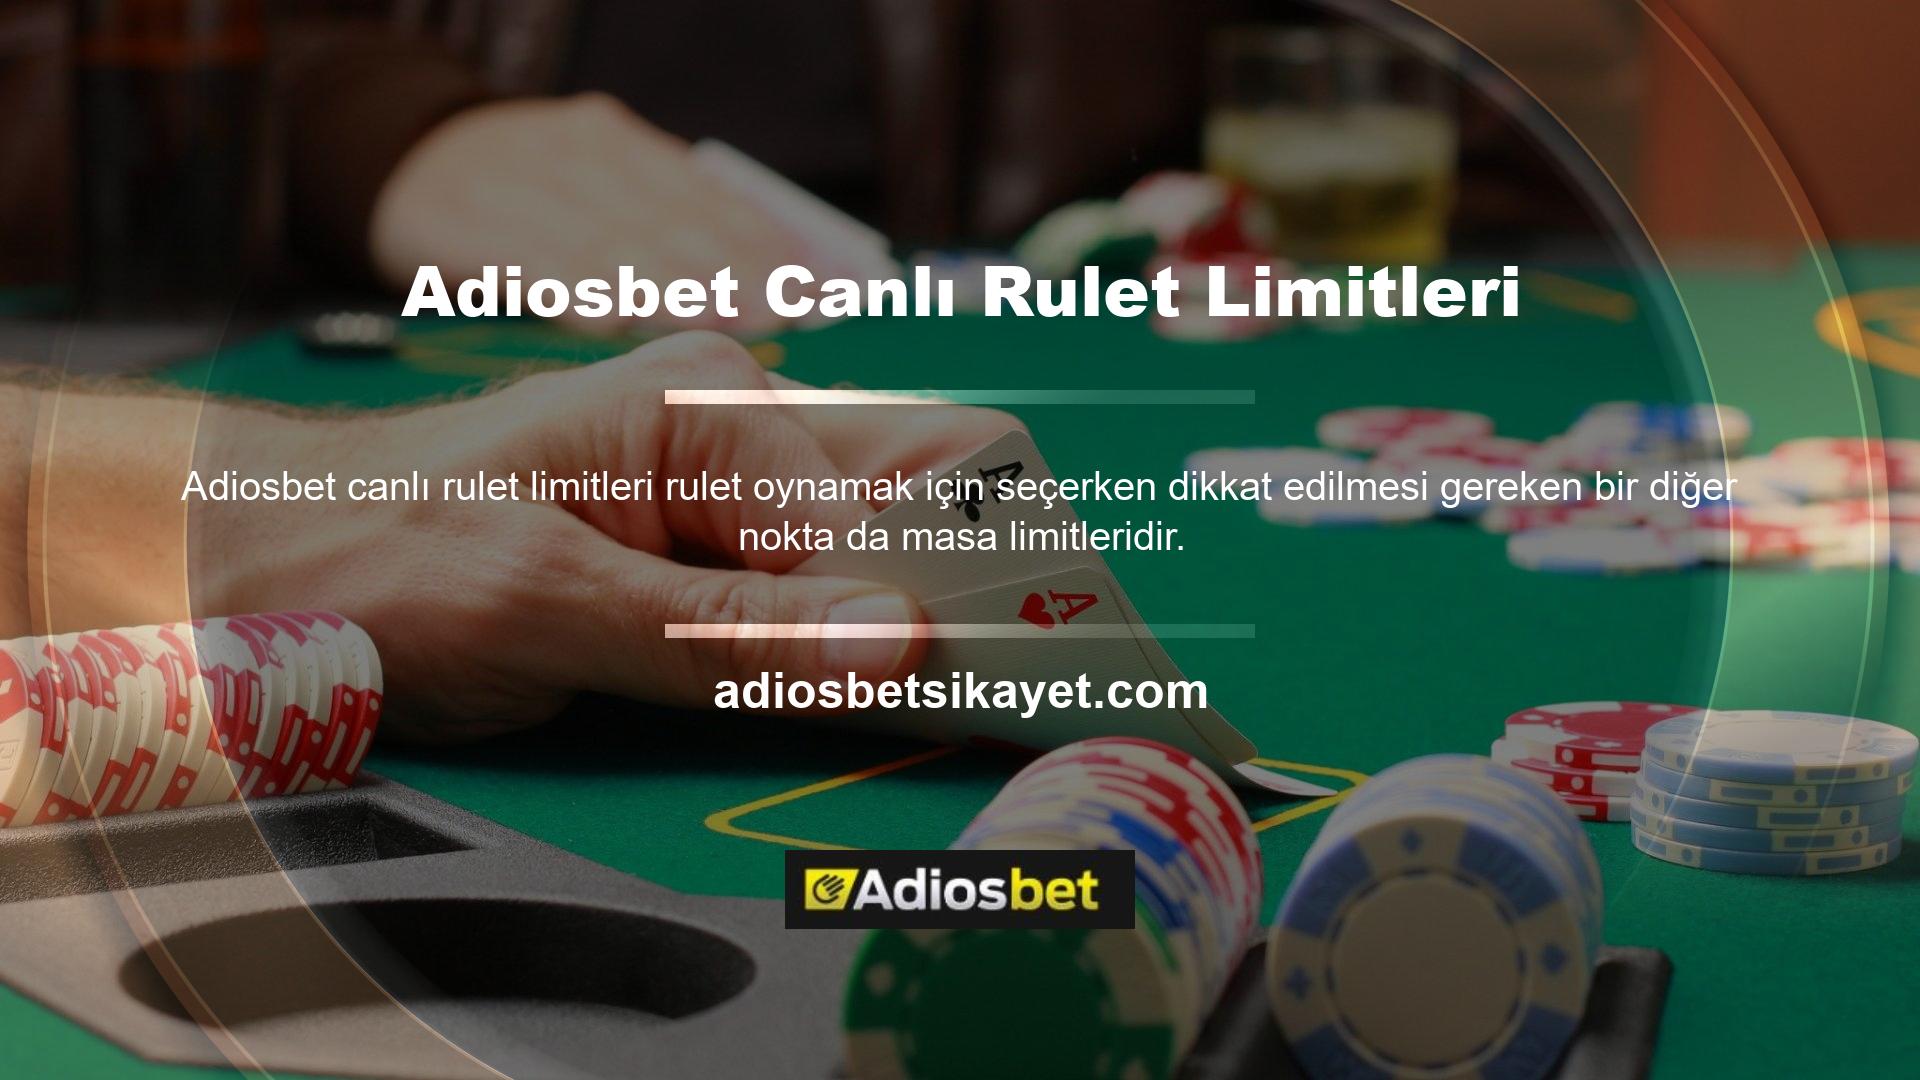 Bazı çevrimiçi casinoların çok katı masa limitleri vardır ve yüksek bahisler için uygun değildir